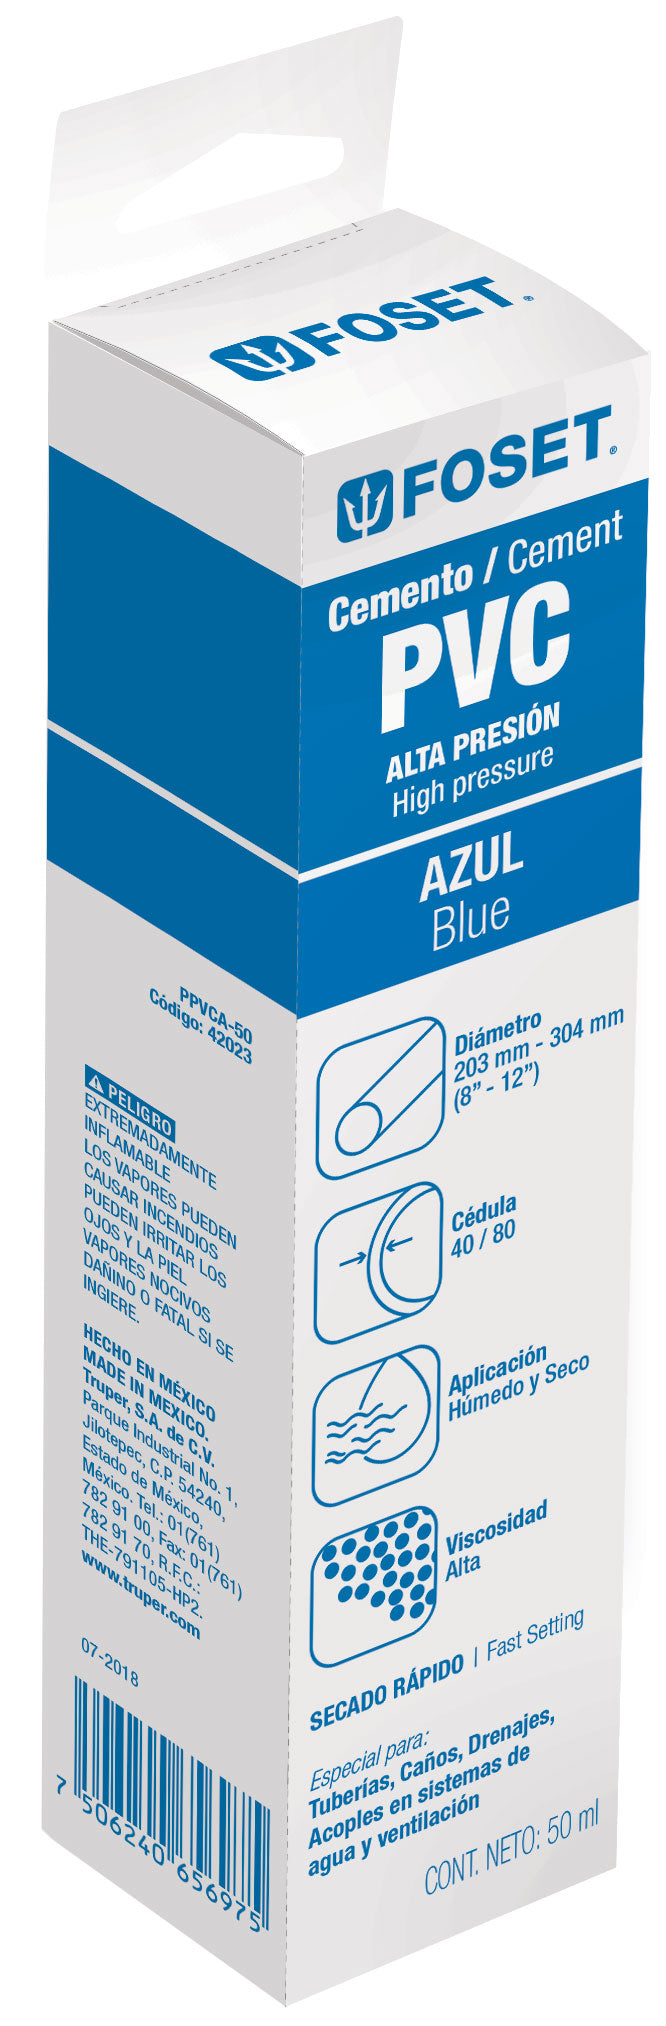 Cemento azul para PVC en tubo de 50 ml,  alta presión,  Foset